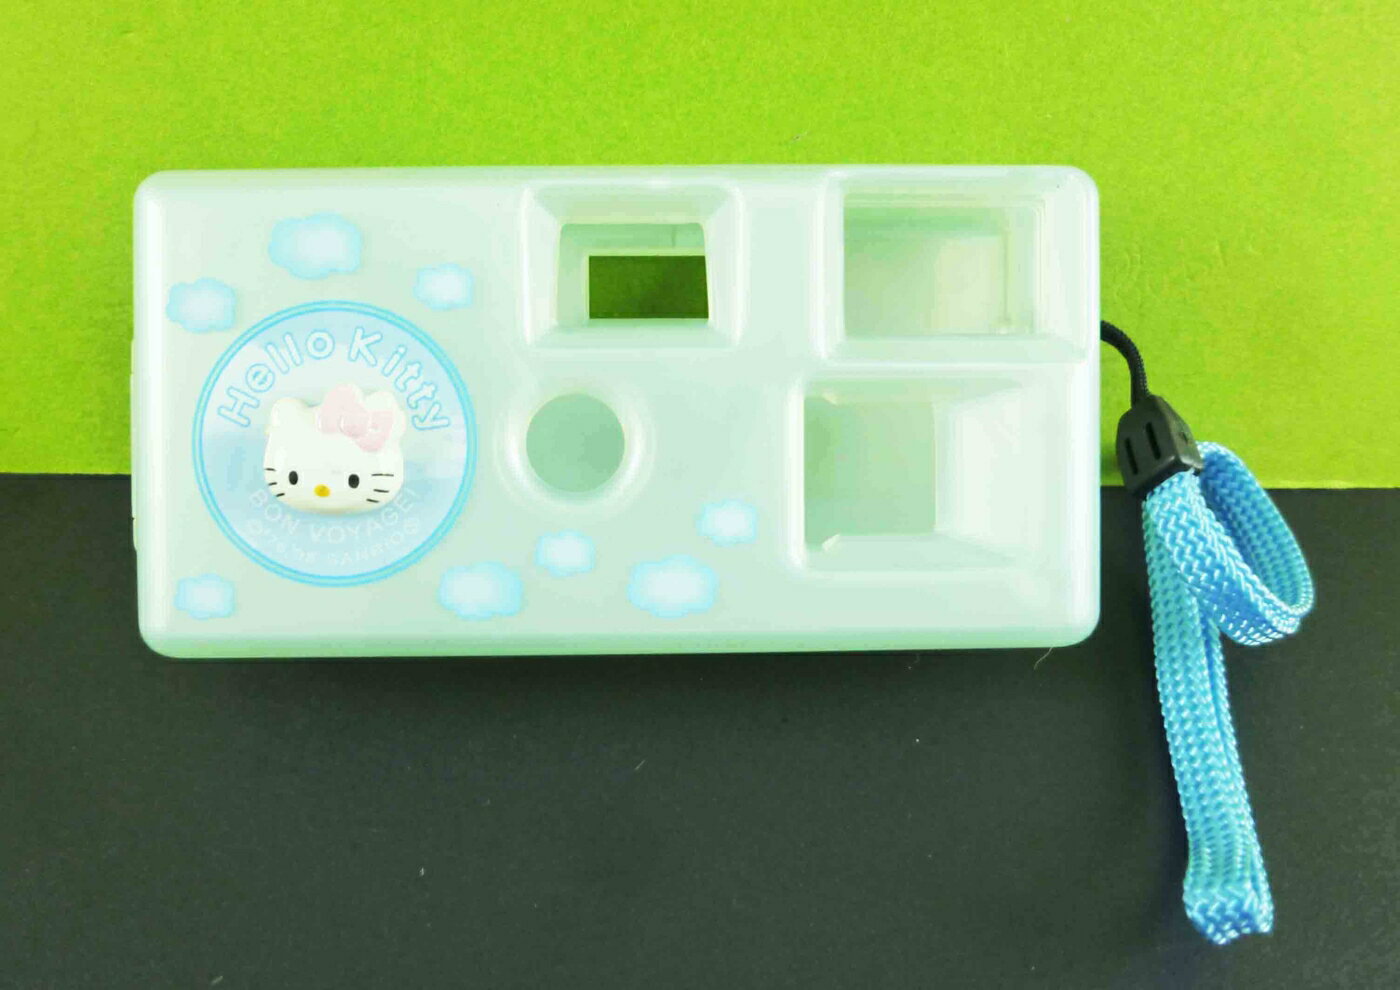 【震撼精品百貨】Hello Kitty 凱蒂貓 相機玩具-藍 震撼日式精品百貨